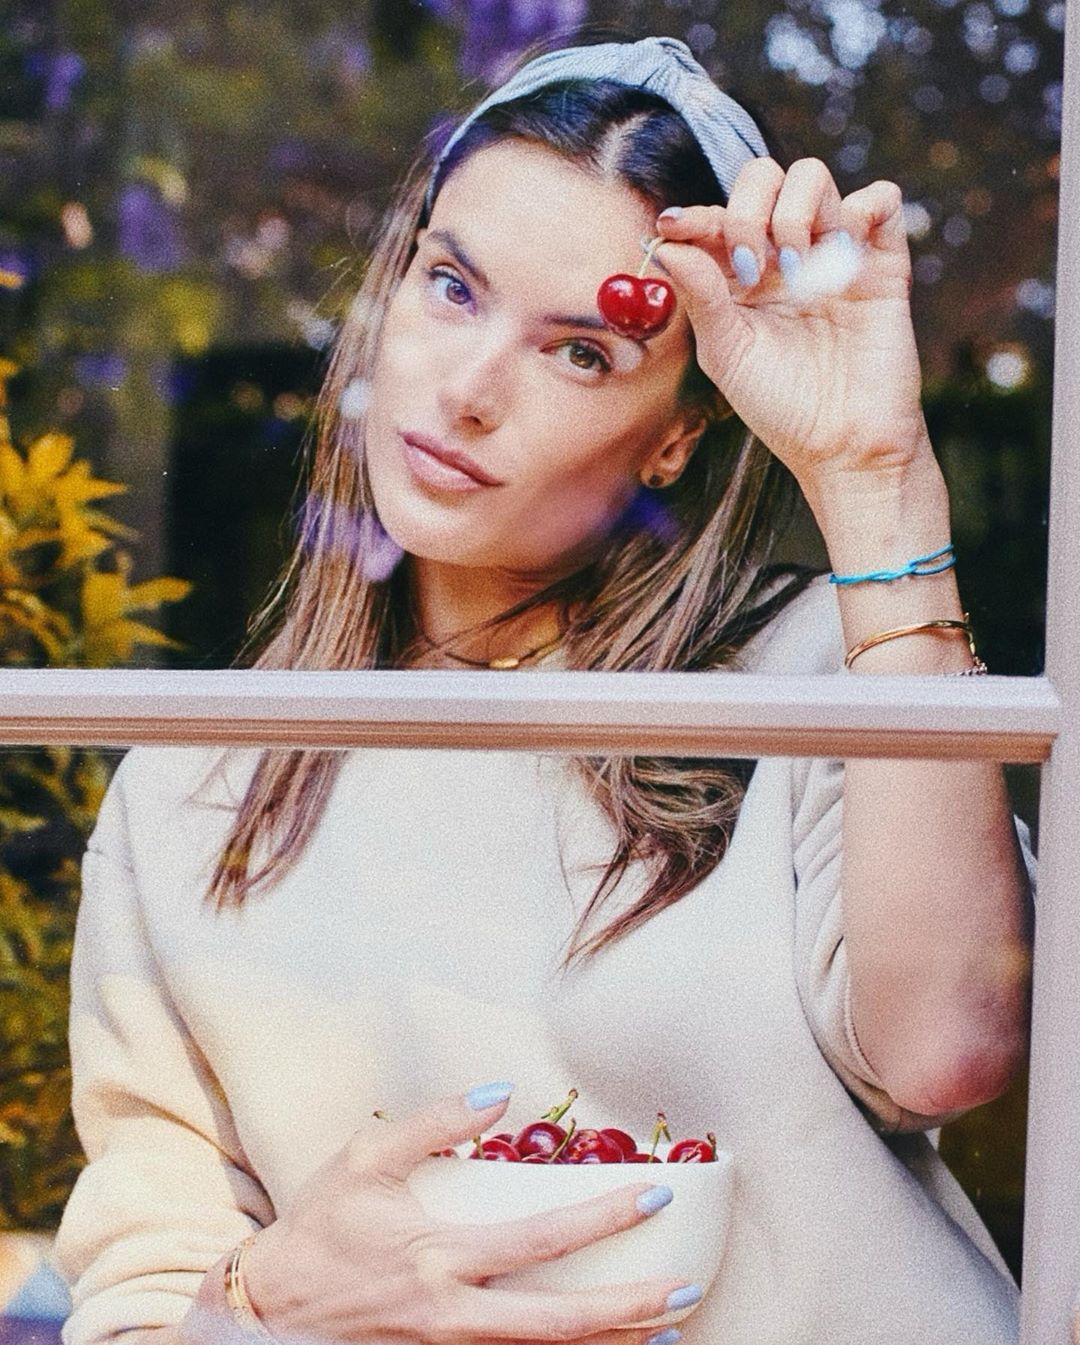 Photos n°3 : Alessandra Ambrosio Eating Cherries in her Panties!